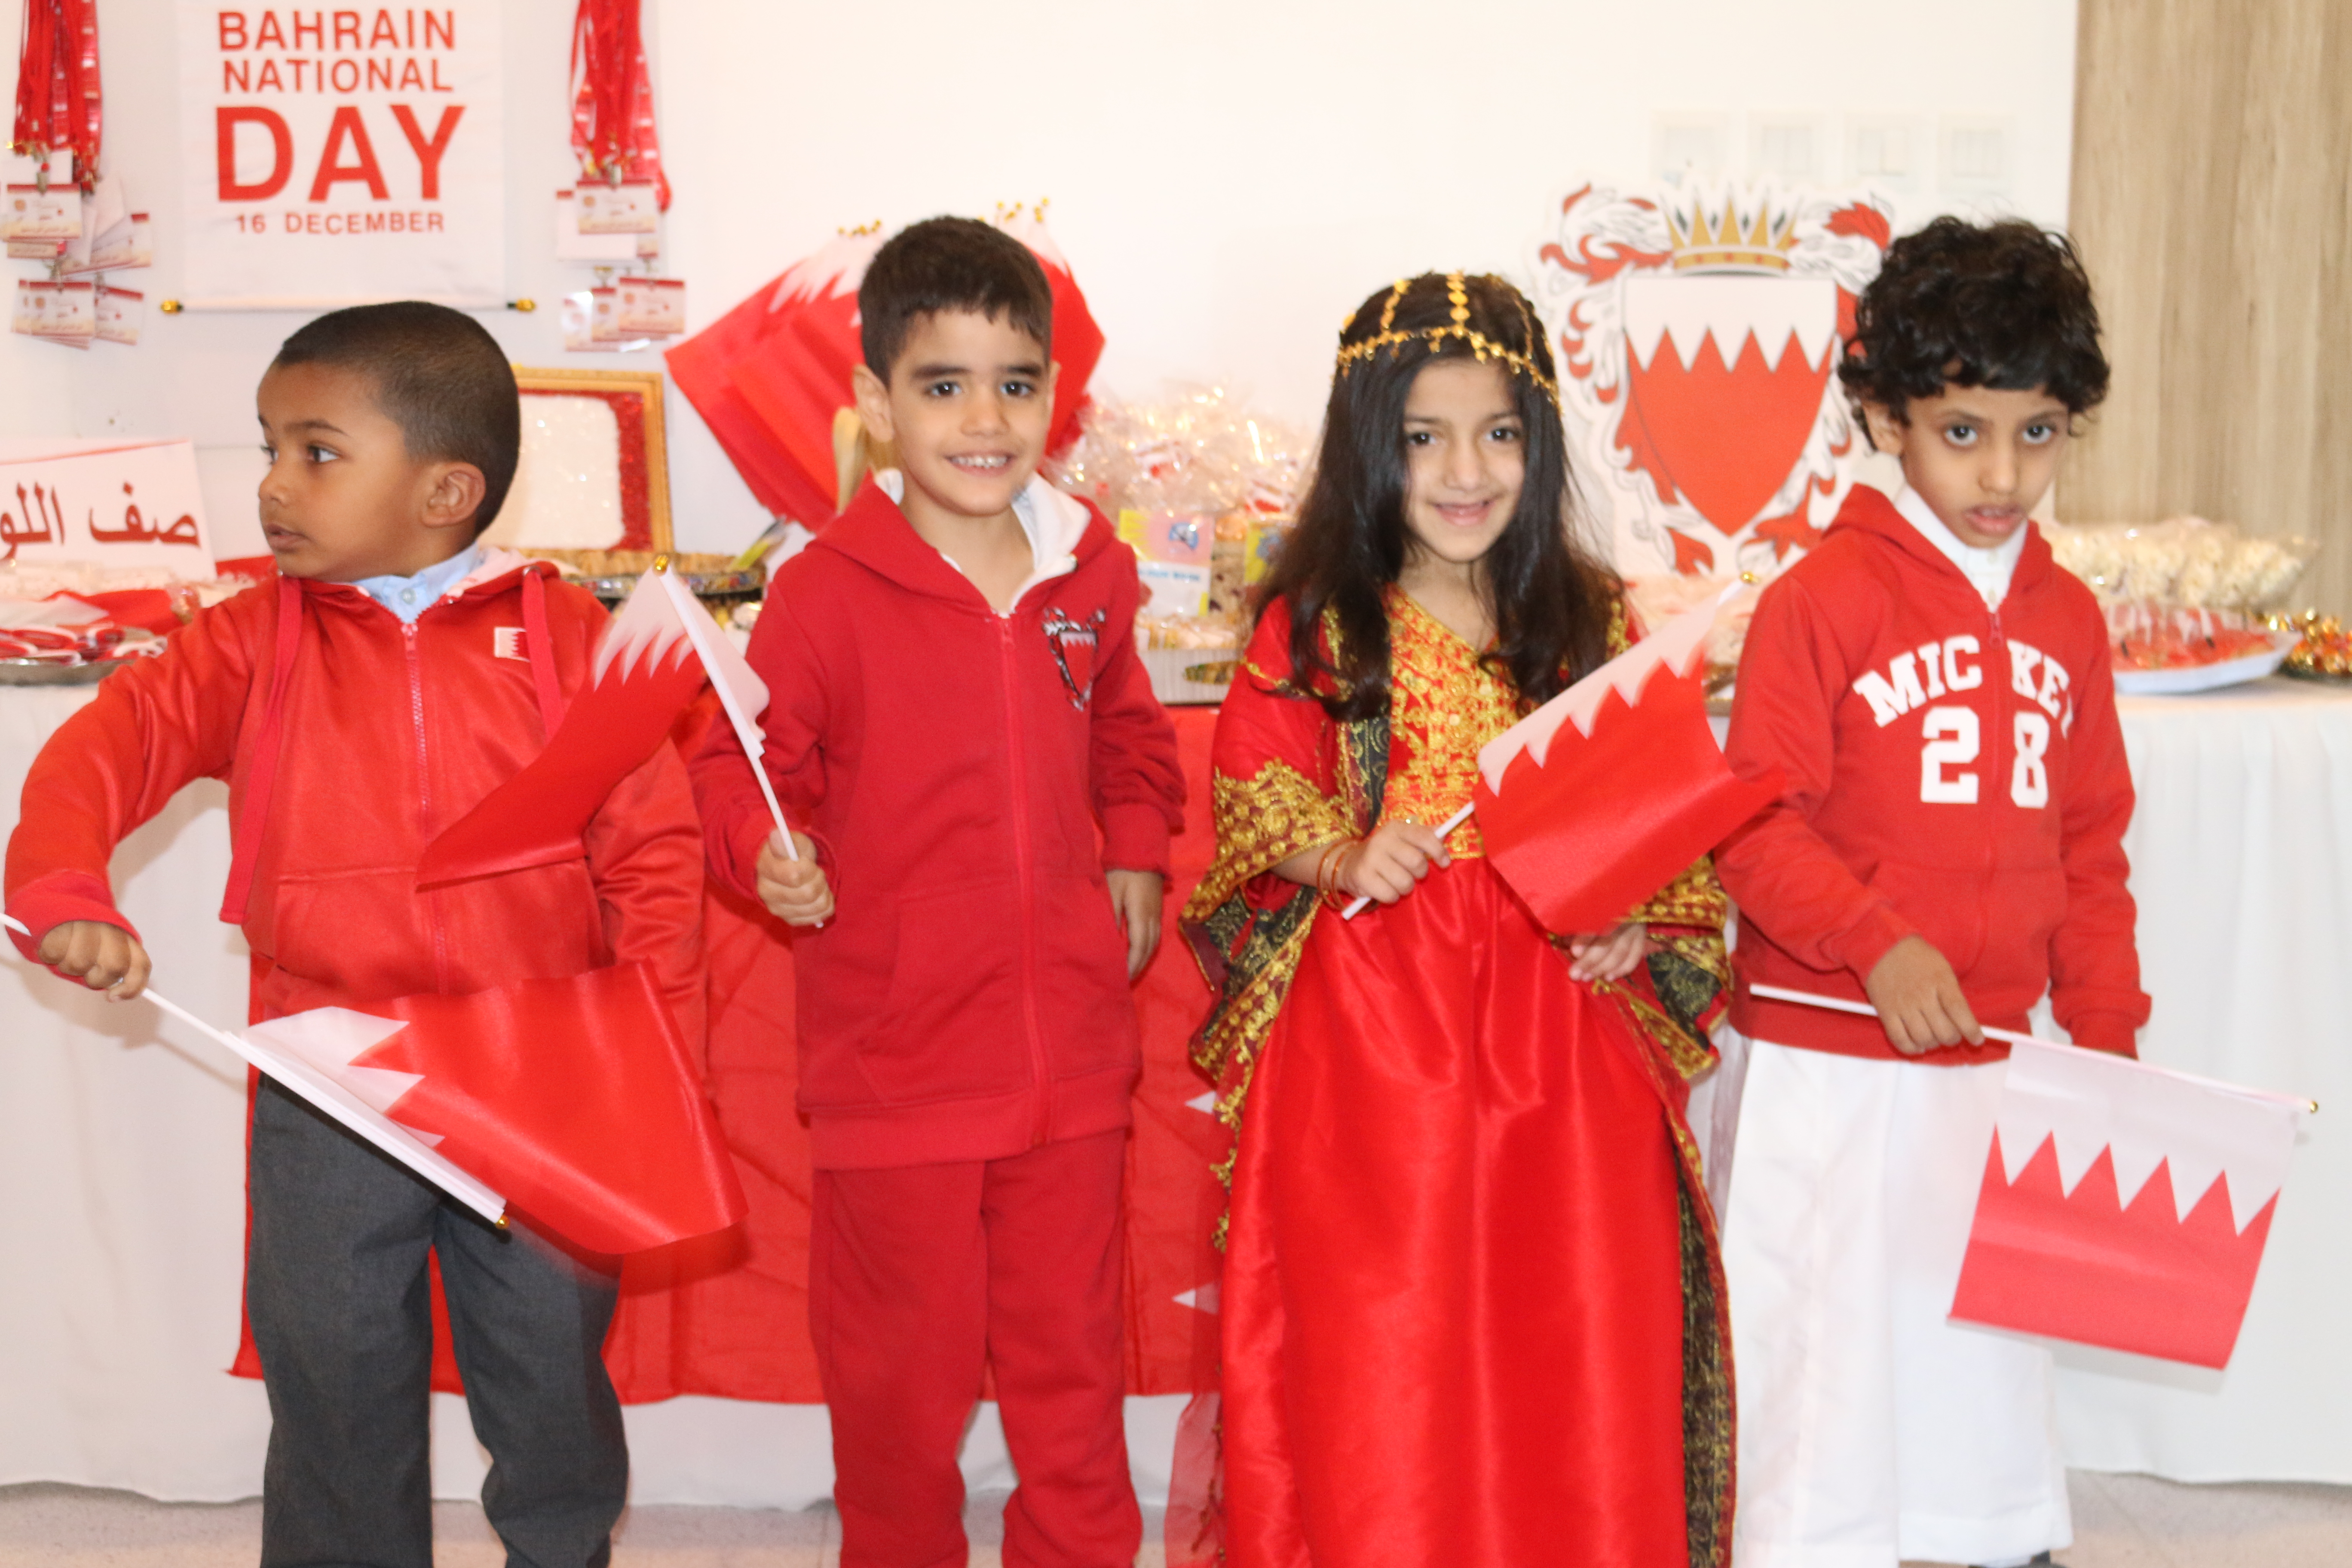 احتفالية اليوم الوطني البحريني وذكرى تولي جلالة الملك مقاليد الحكم الـ 52